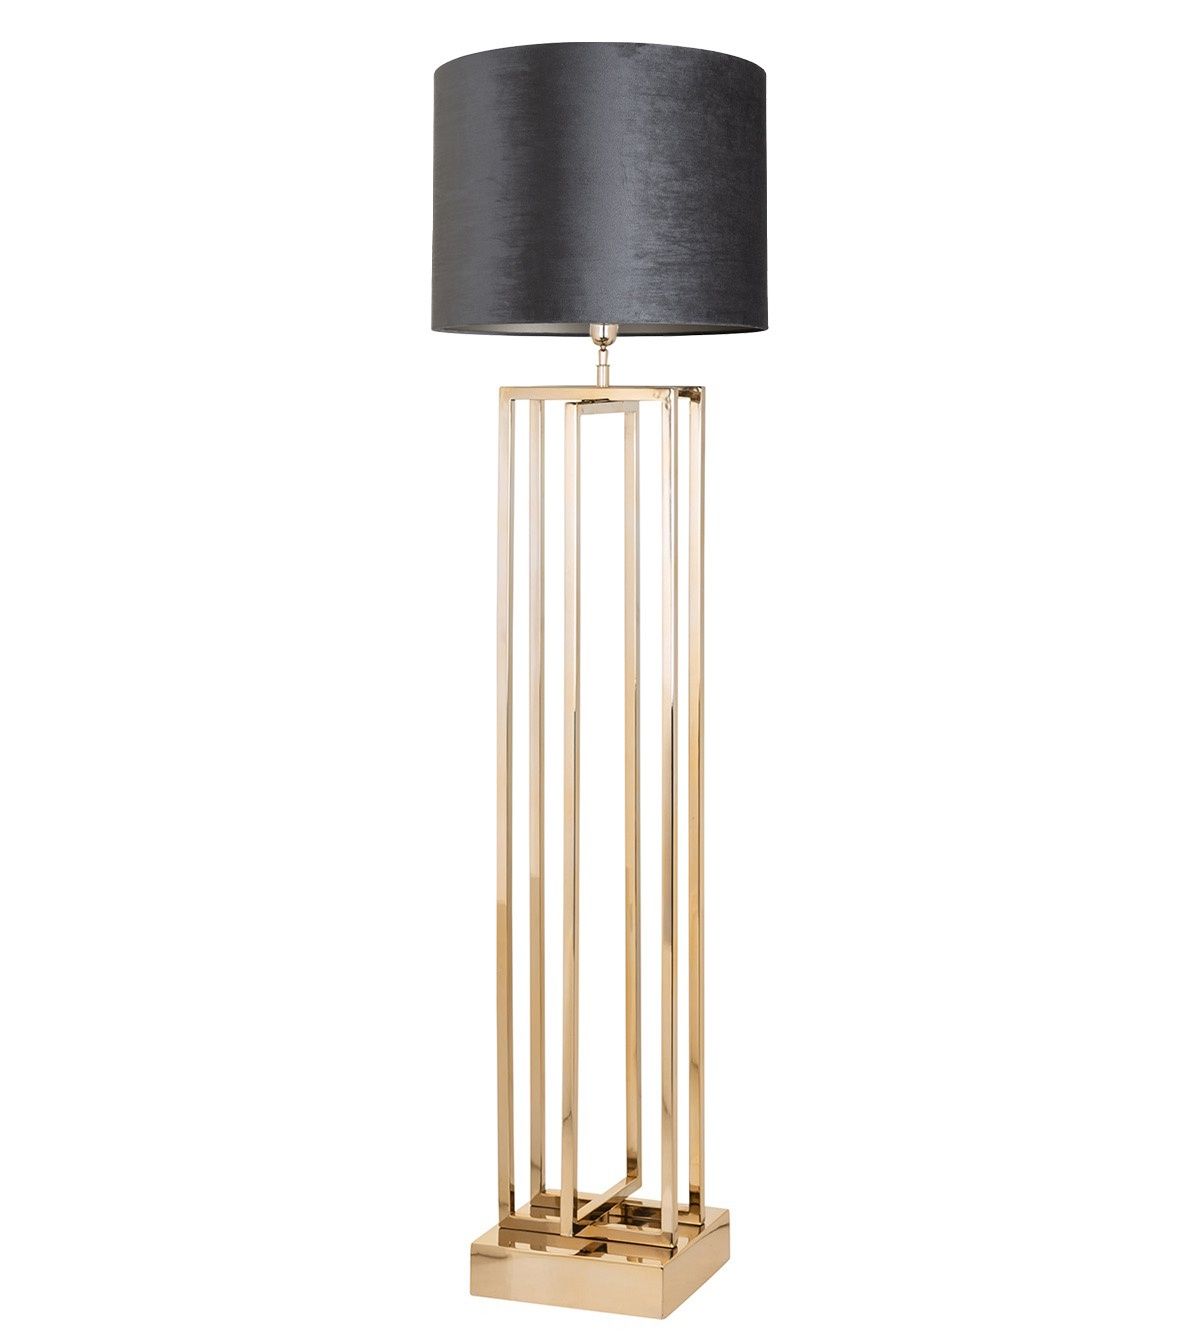 Floor Lamp "jay" Geometric Golden Stainless Steel With Stainless Steel Floor Lamps (View 11 of 20)